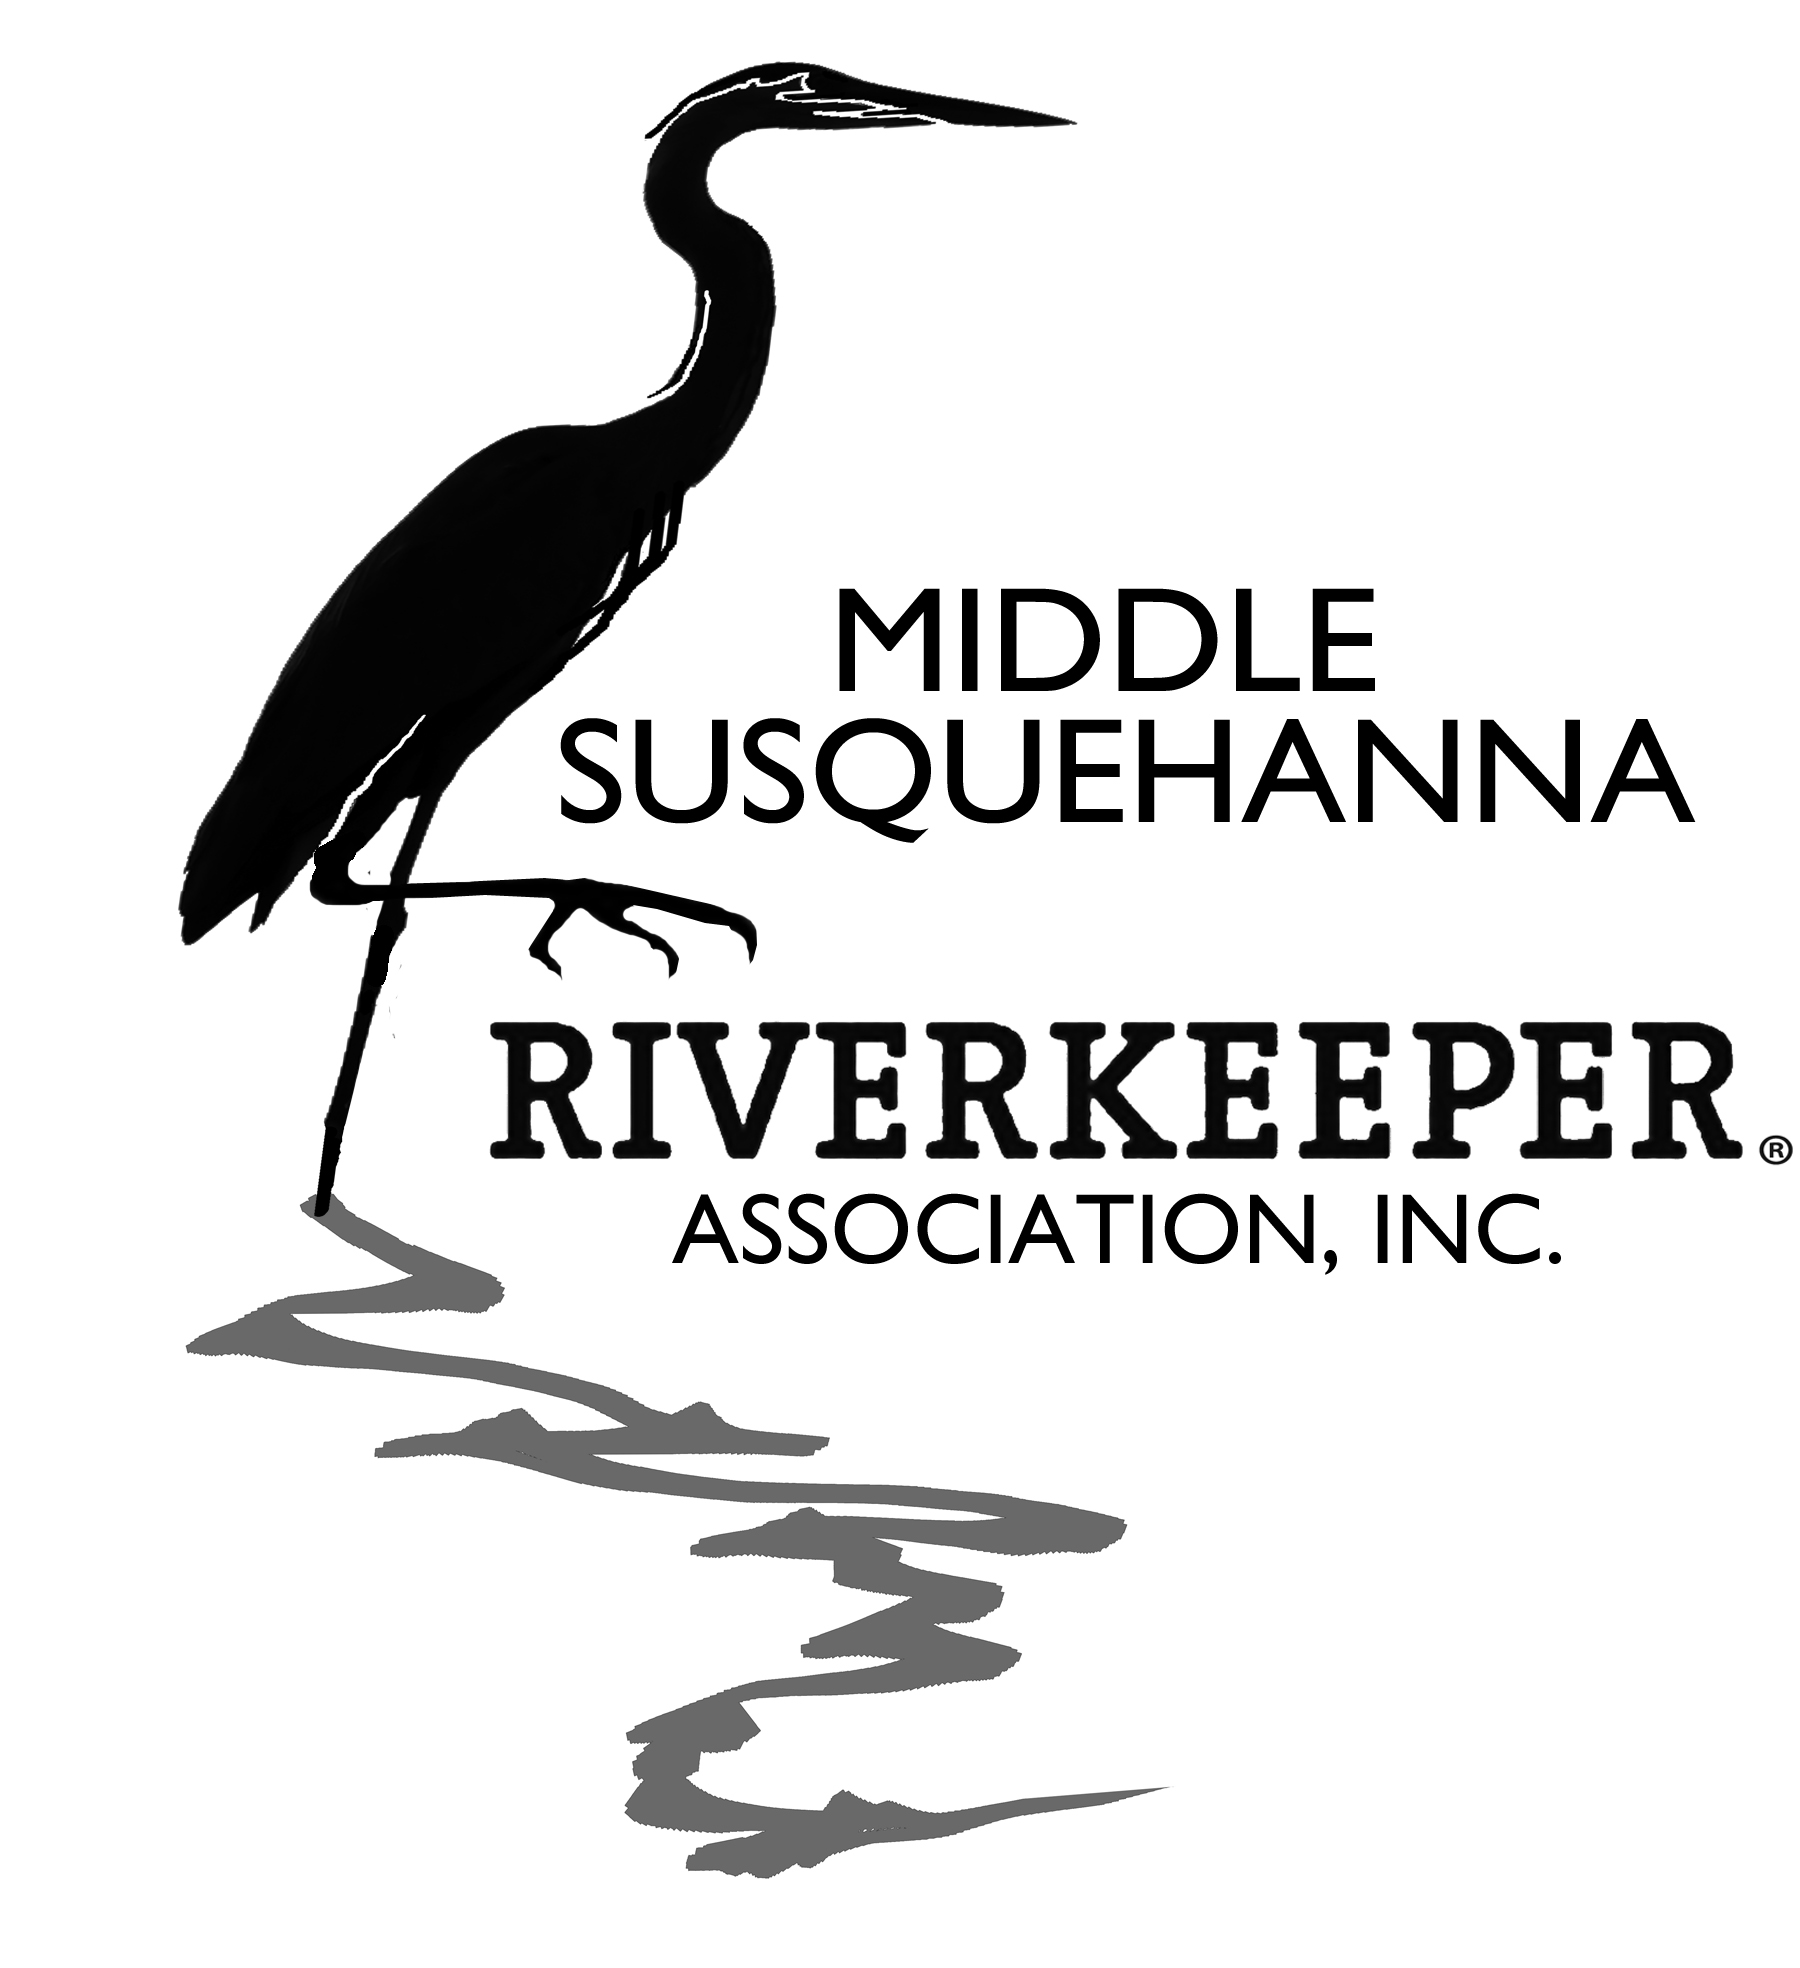 Middle Susquehanna Riverkeeper Association, Inc. logo